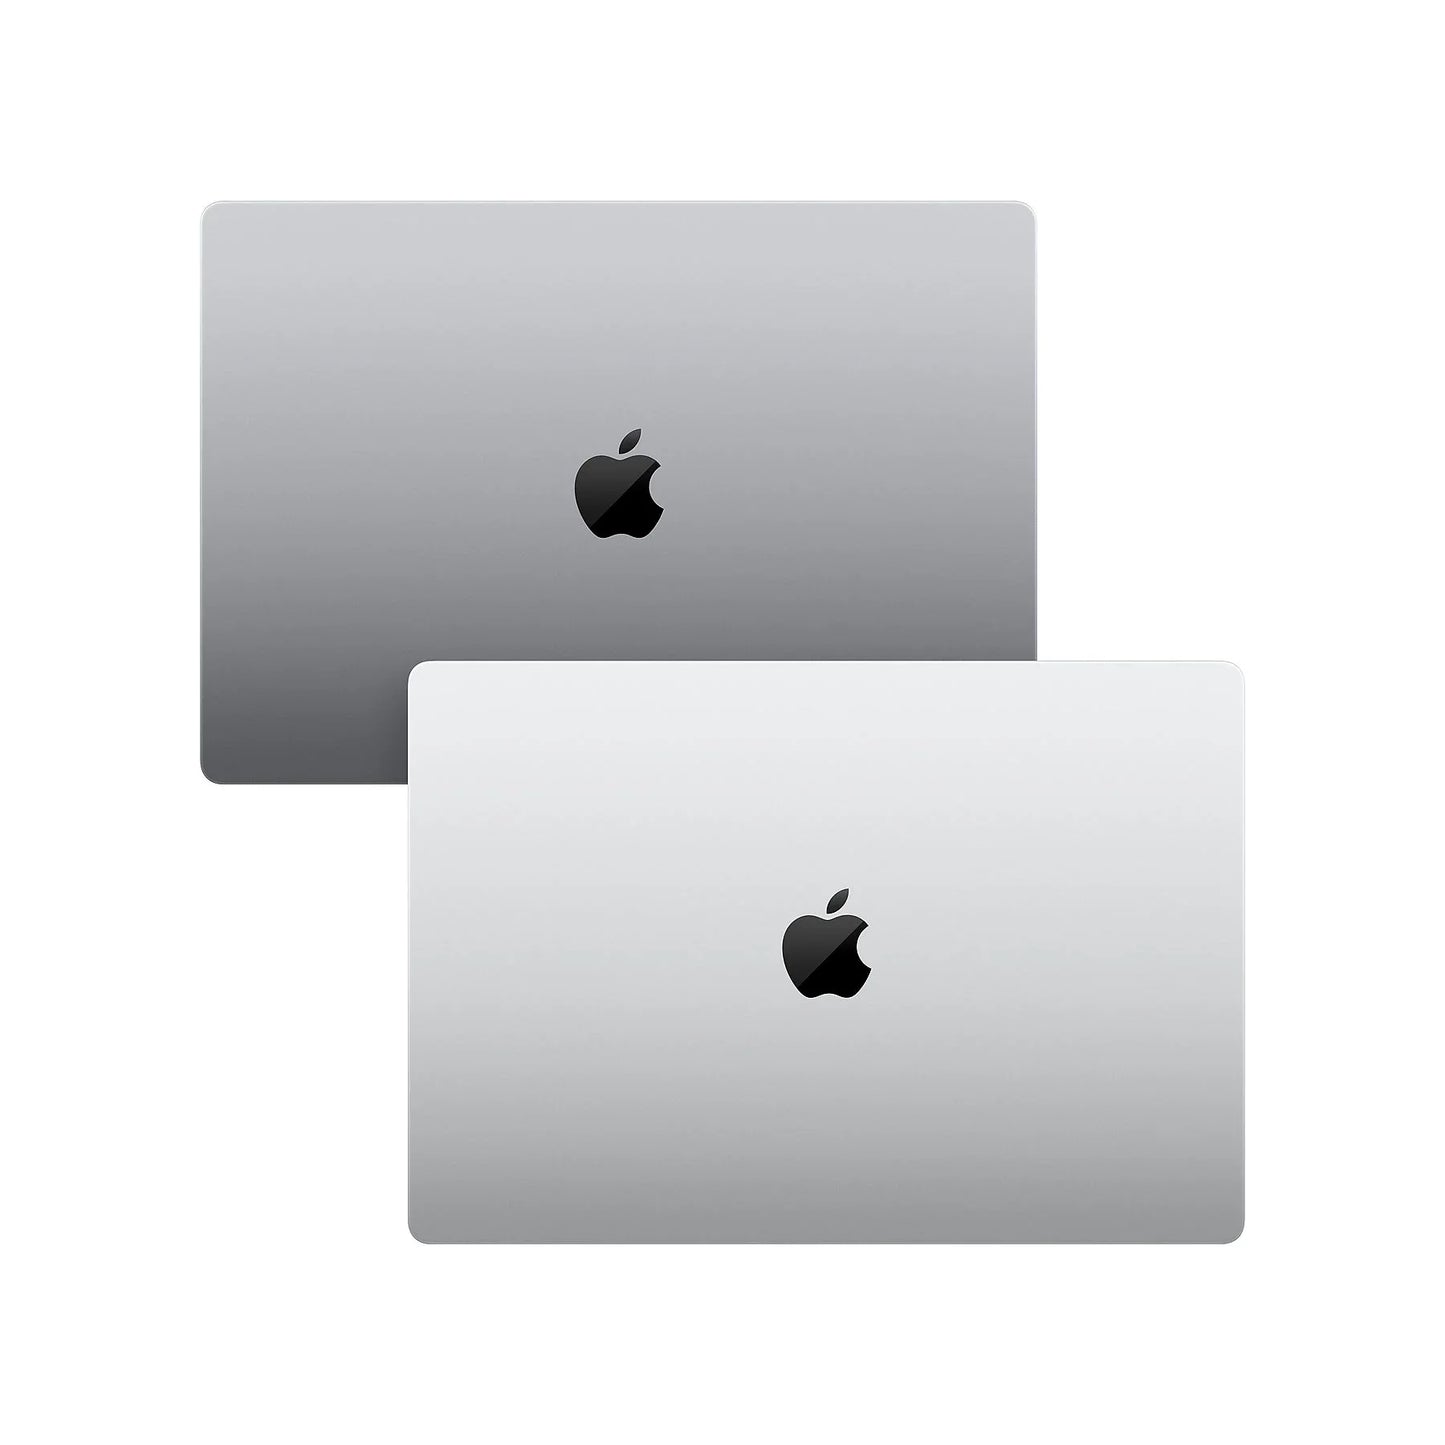 MacBook Pro 16 inch M1 Pro 10-core CPU & 16-core GPU 16 GB 512 GB